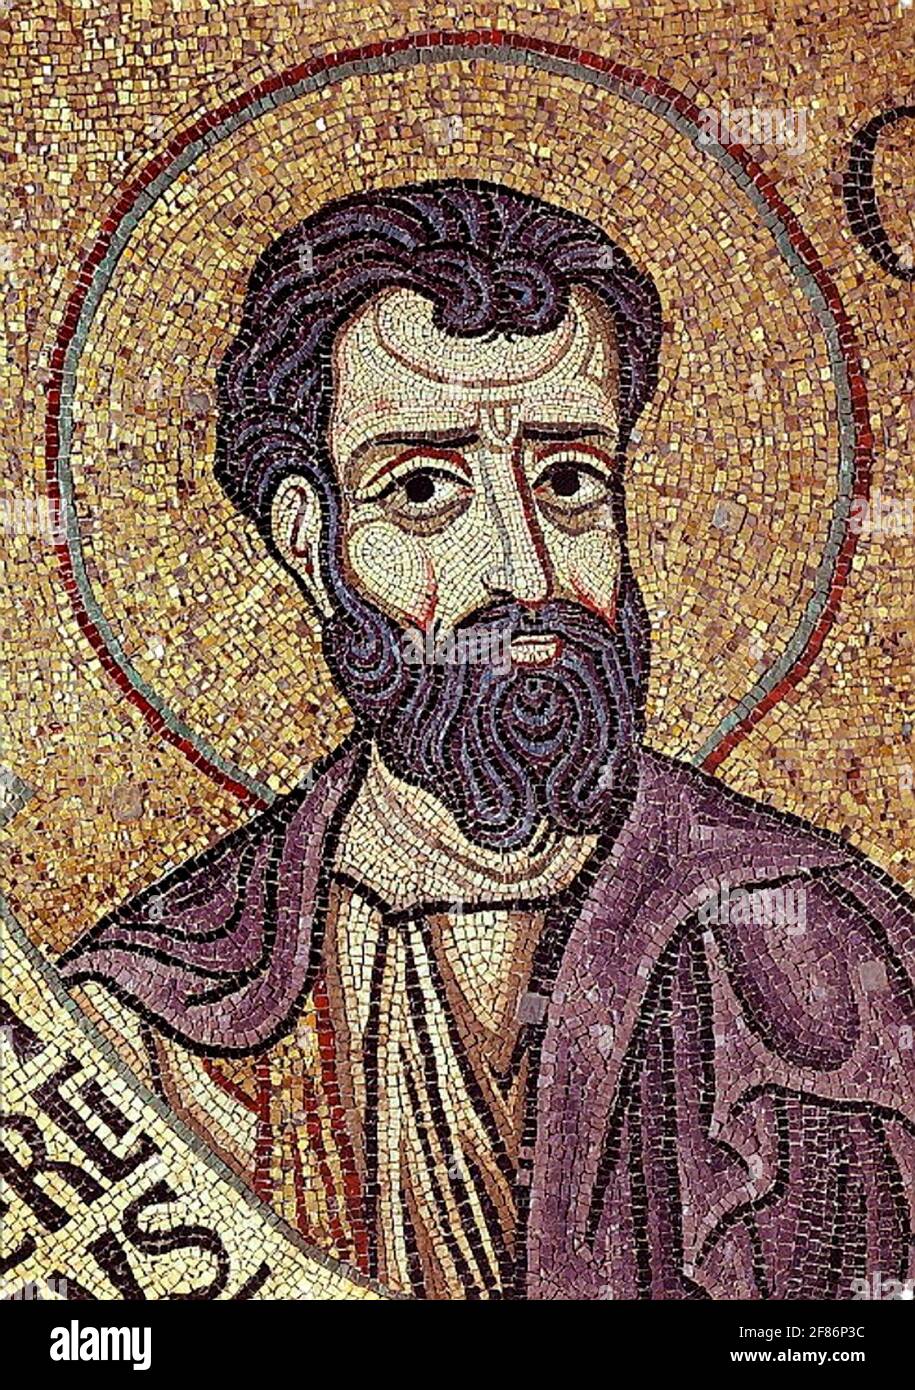 6801. Le prophète Osée, détail de la mosaïque dans la basilique Saint-Marc, datant du 12ème. C. Venise, Italie. Banque D'Images